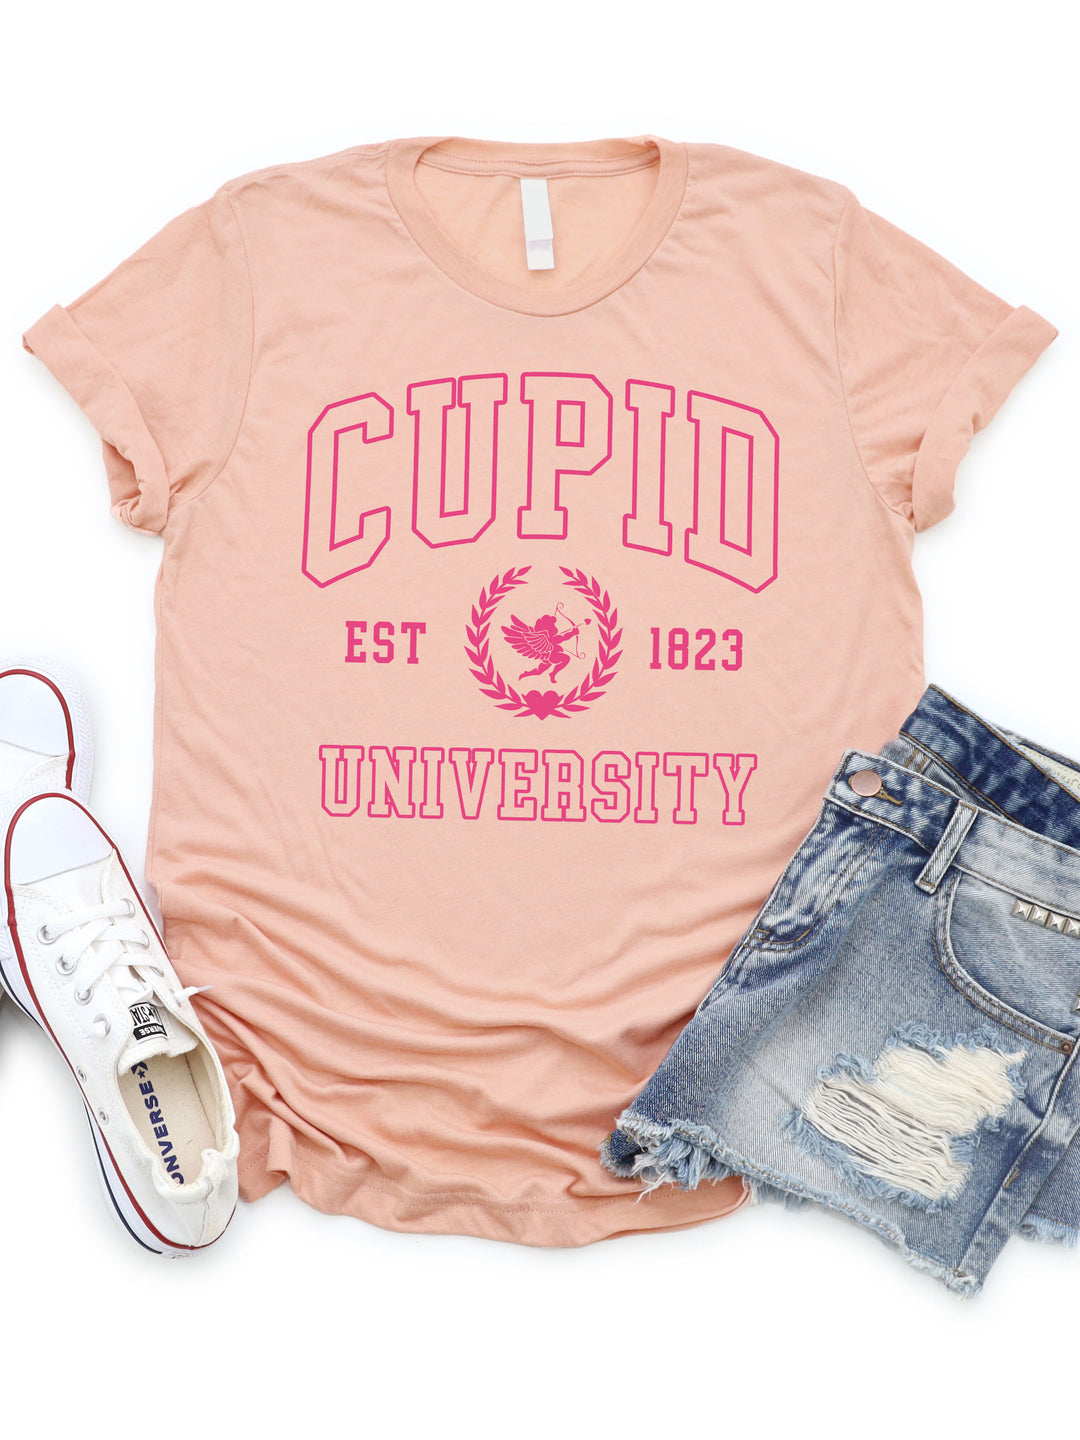 Cupid University Graphic Tee